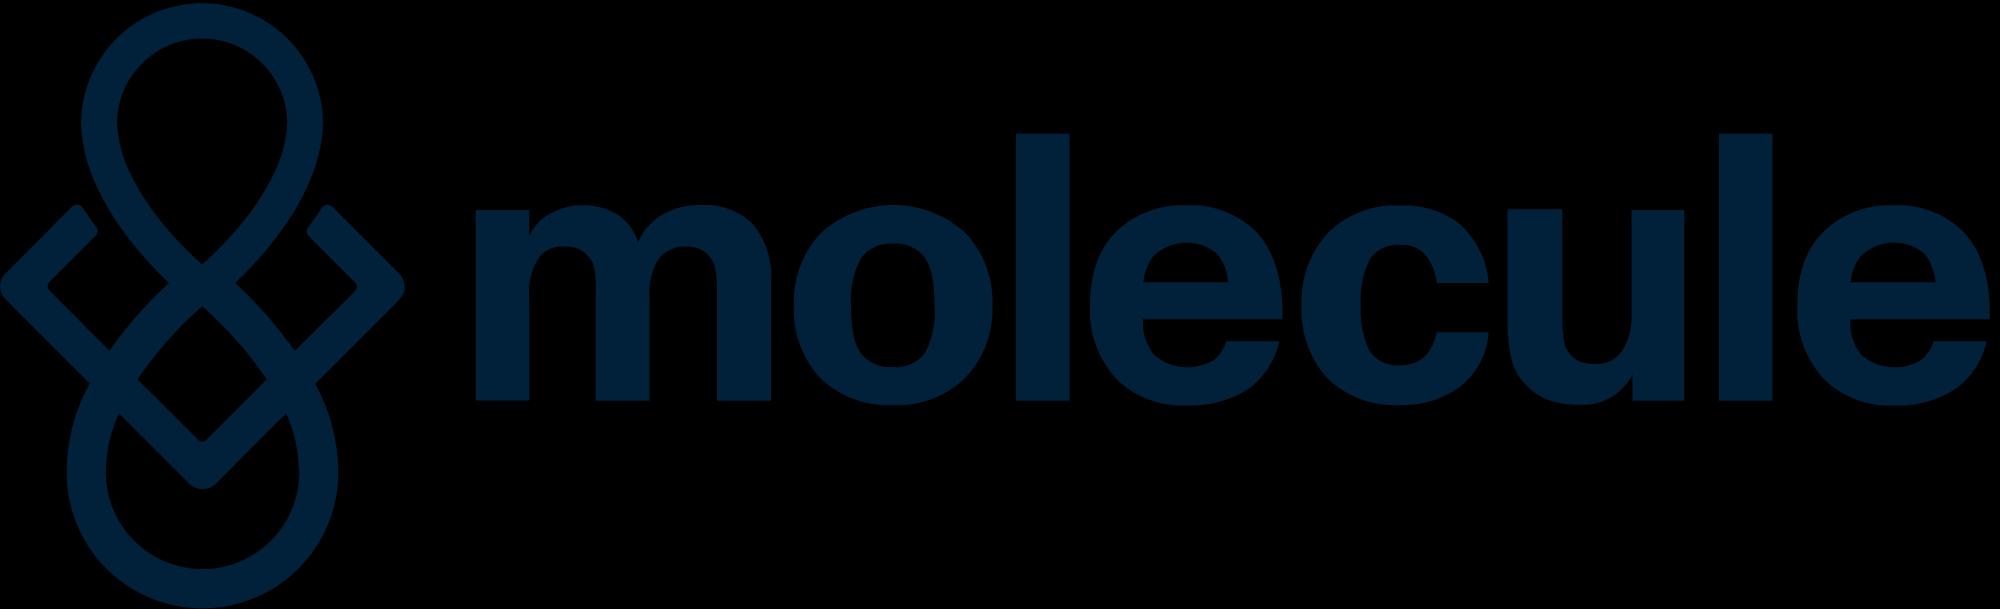 Molecule_logo